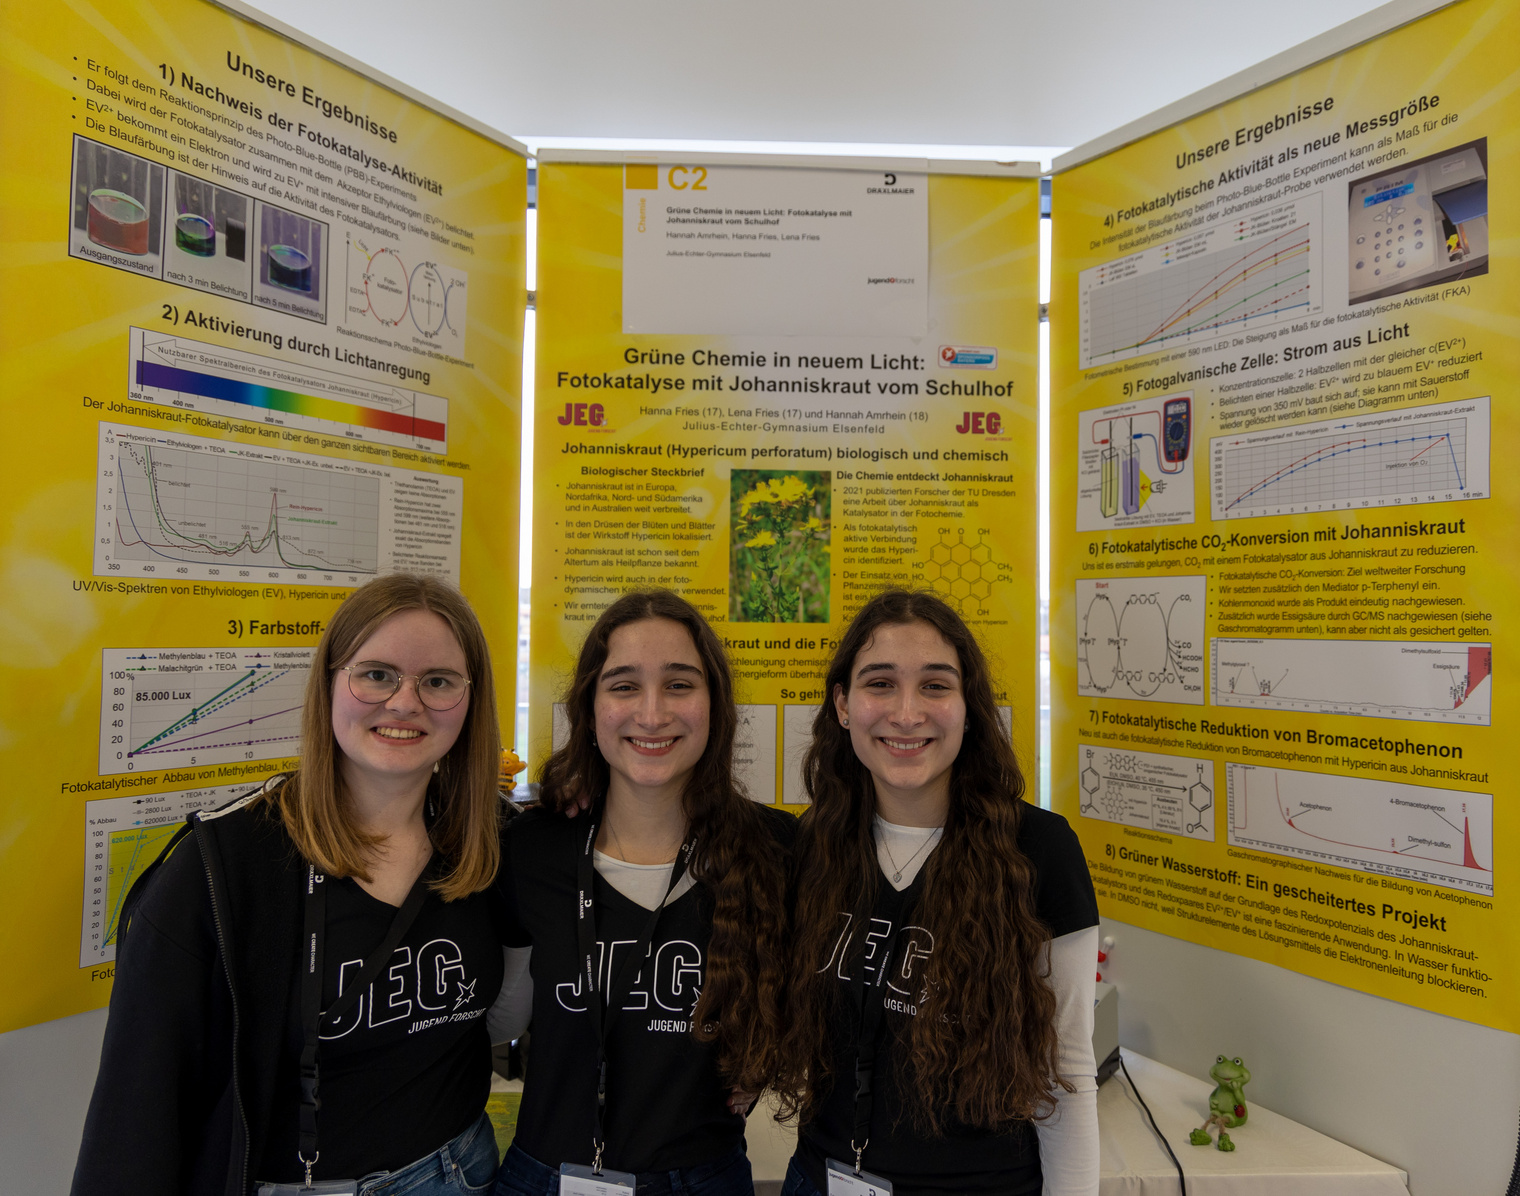 Von links: Hannah Amrhein, Hanna Fries und Lena Fries: Grüne Chemie in neuem Licht: Fotokatalyse mit Johanniskraut vom Schulhof